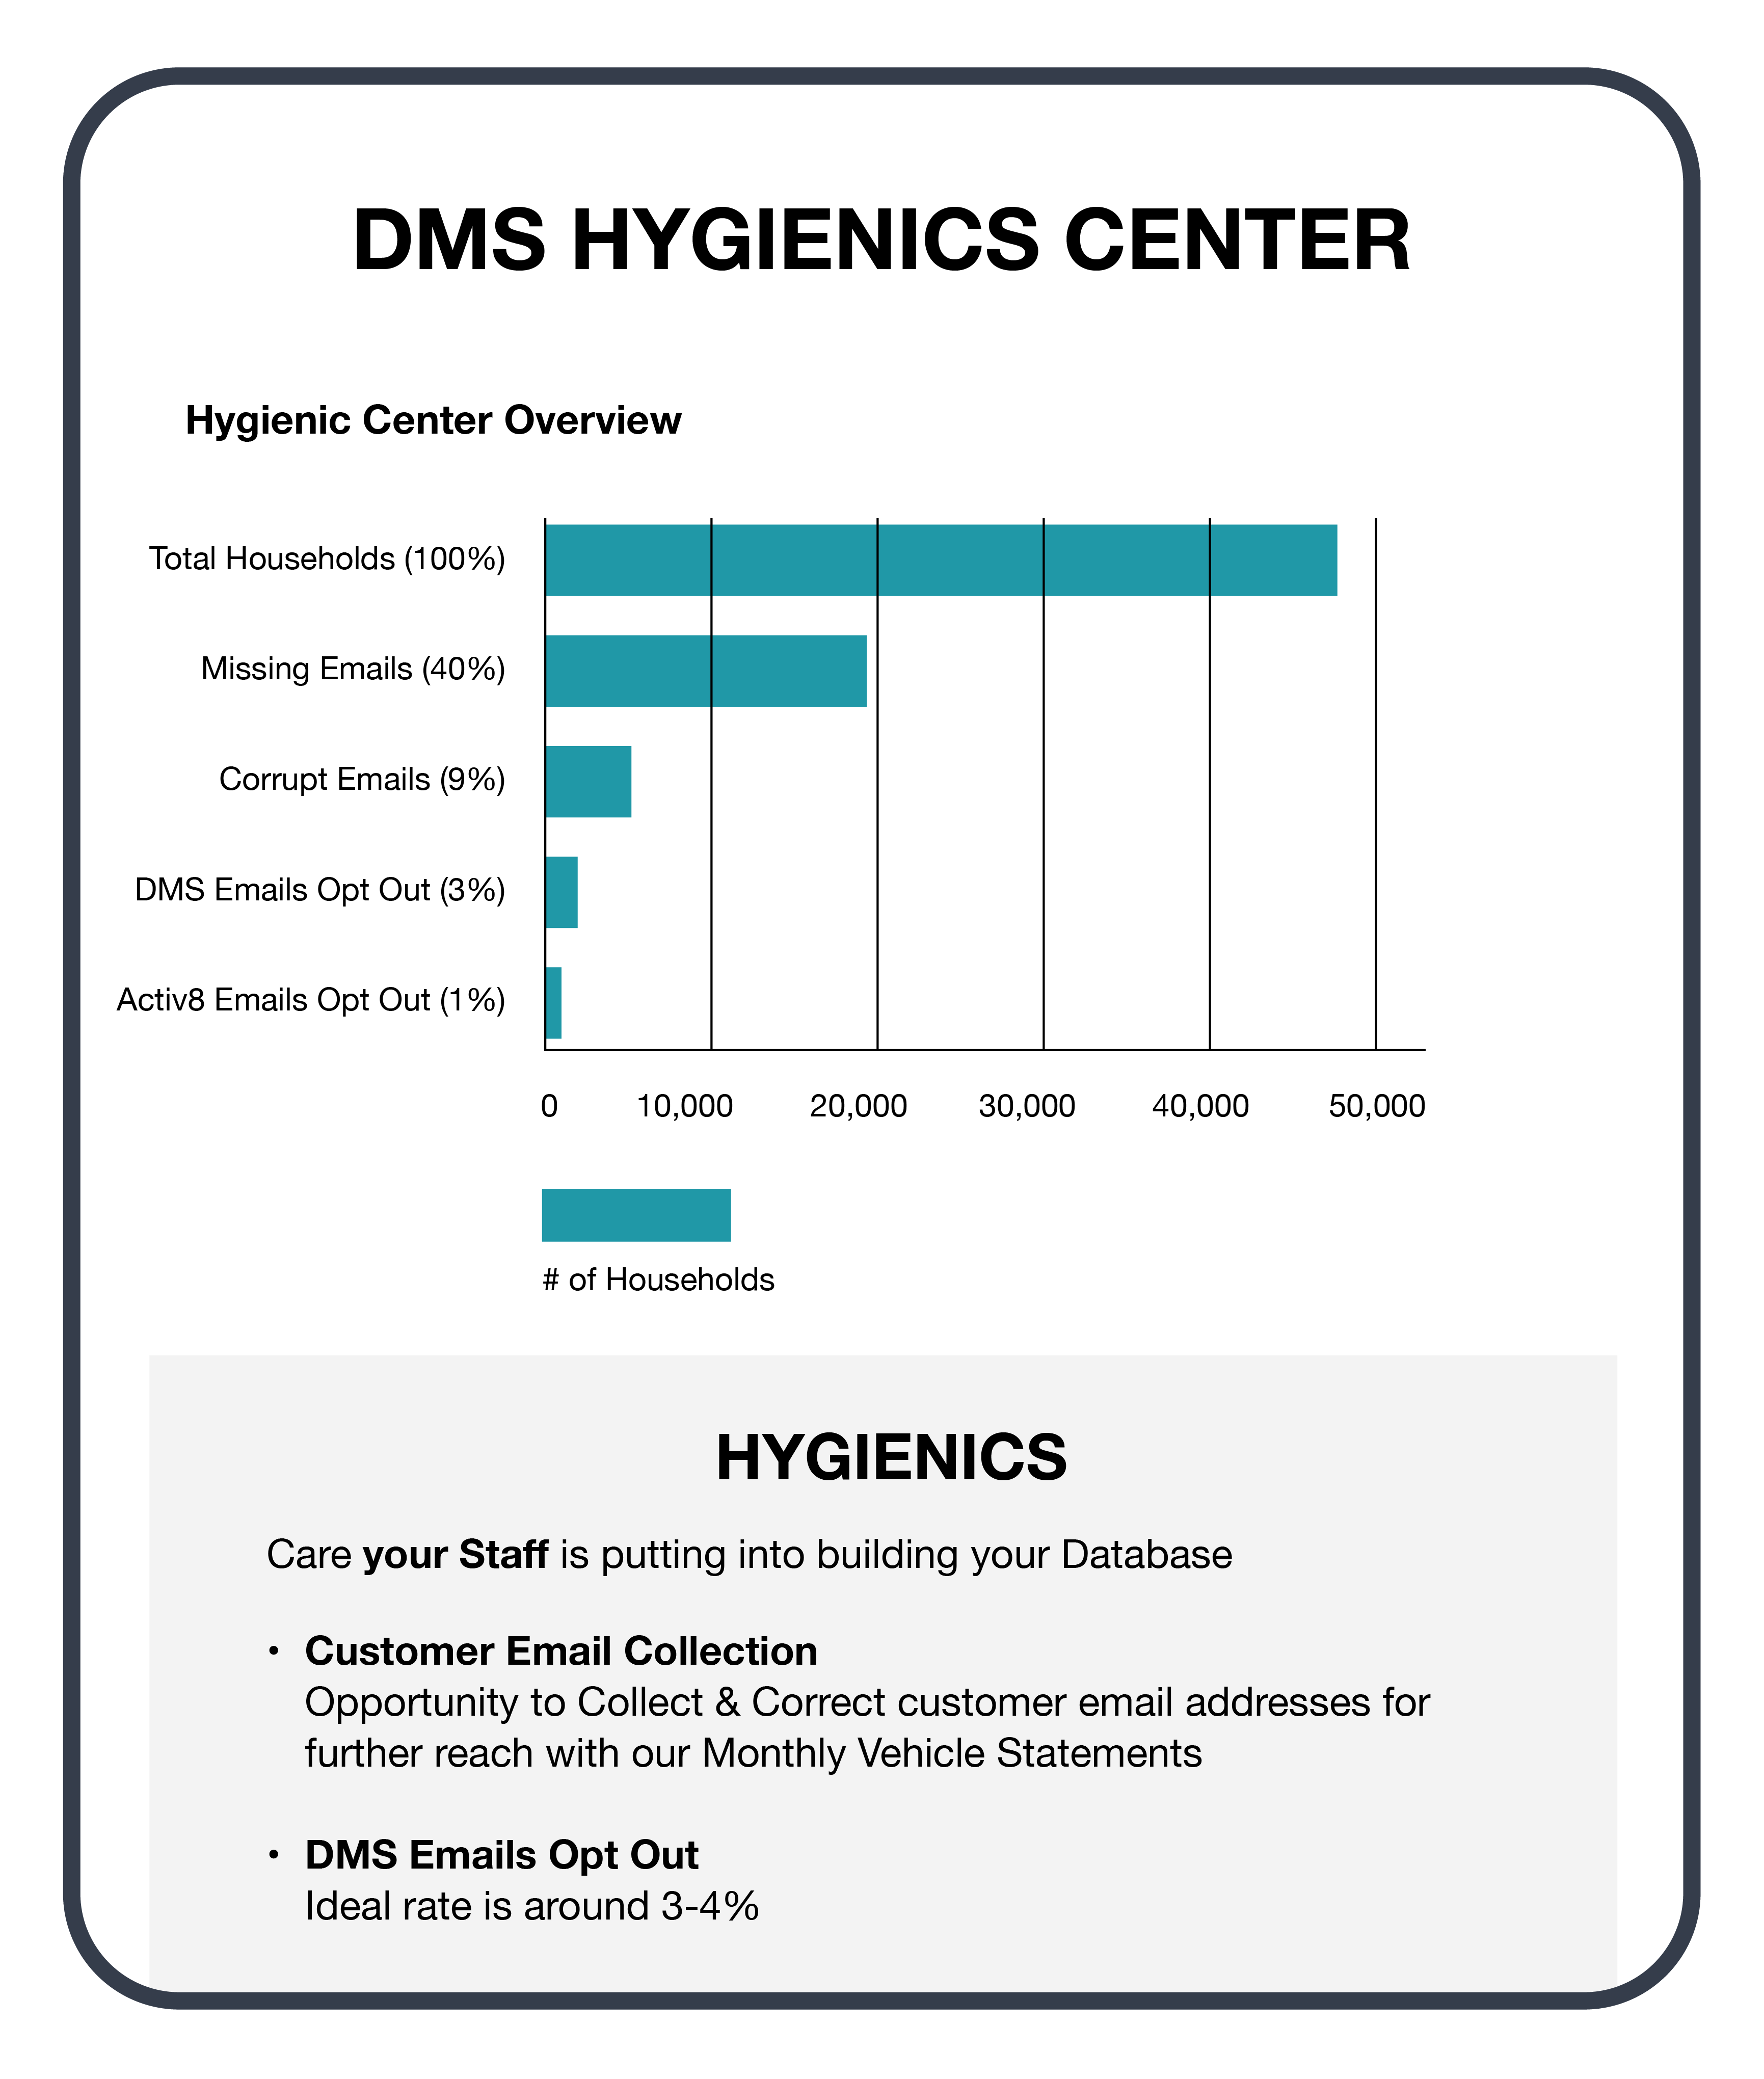 DMS Hygienics center